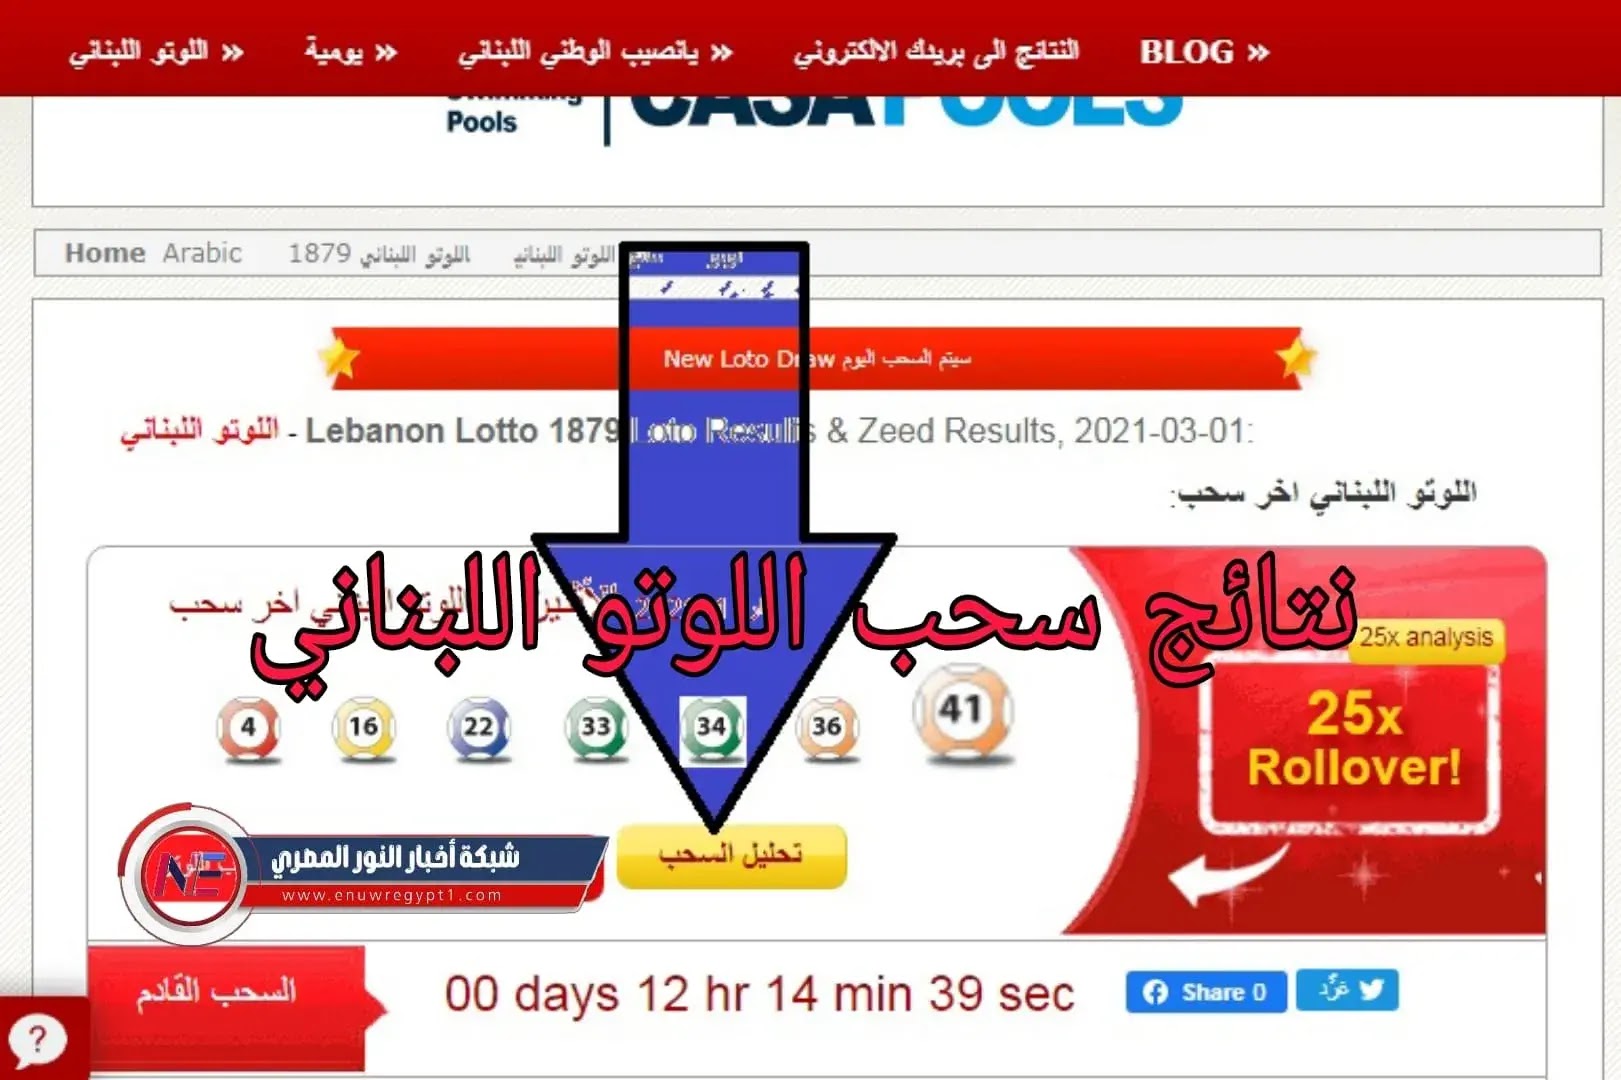 الاصدار الجديد .. الان نتائج سحب اللوتو اللبناني رقم 2059 بتاريخ اليوم الإثنين 21-11-2022 يانصيب لبنان